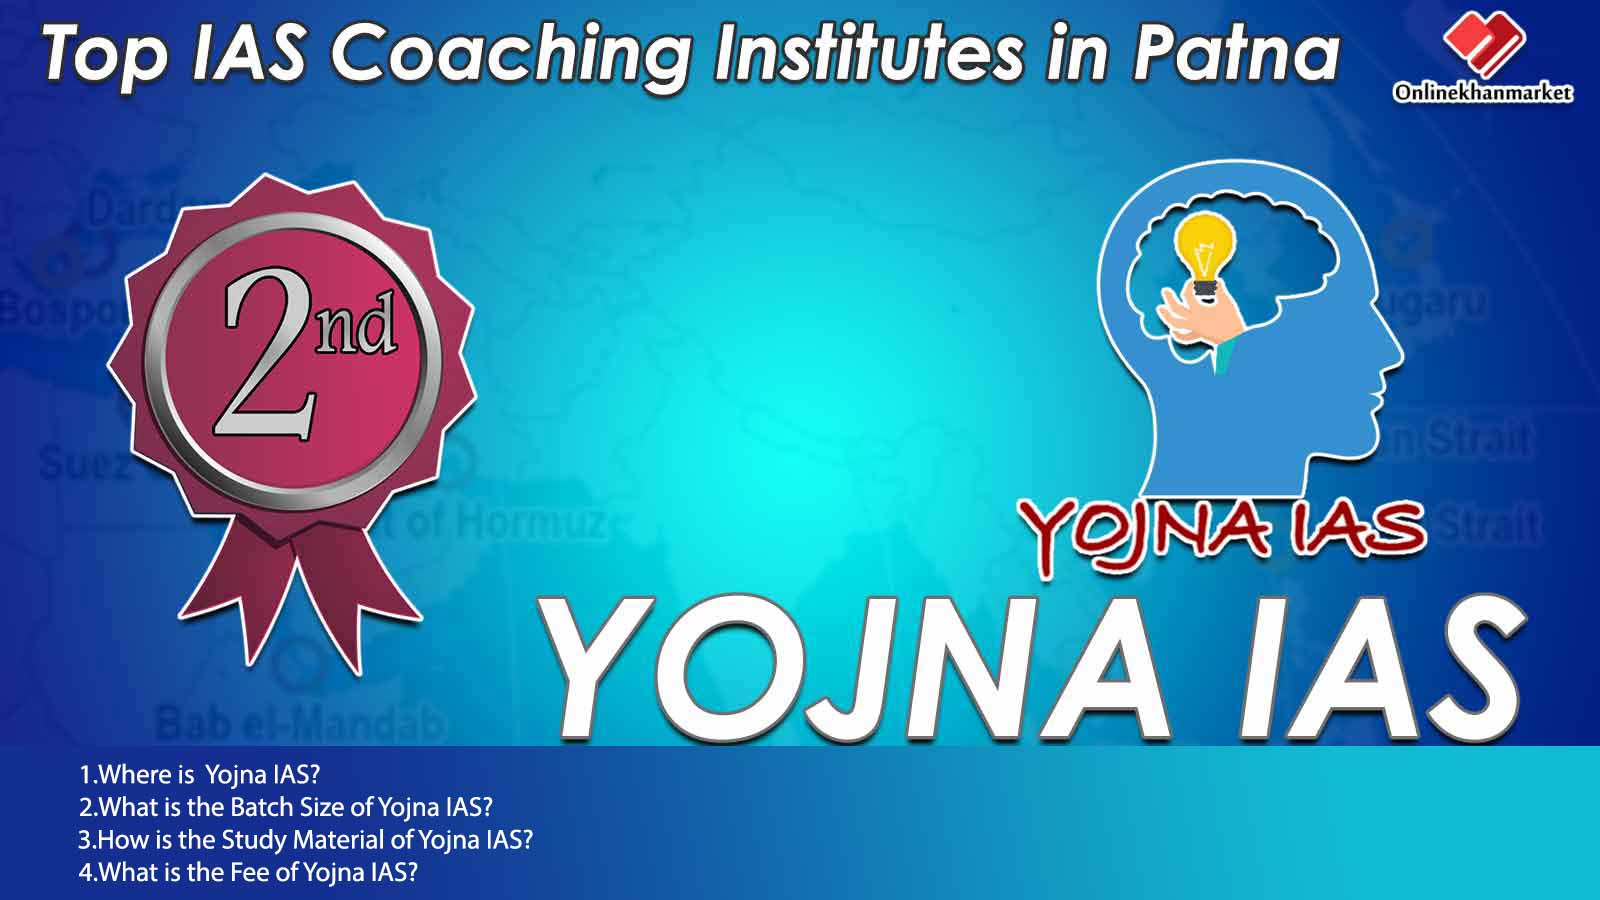 IAS Coaching in Patna